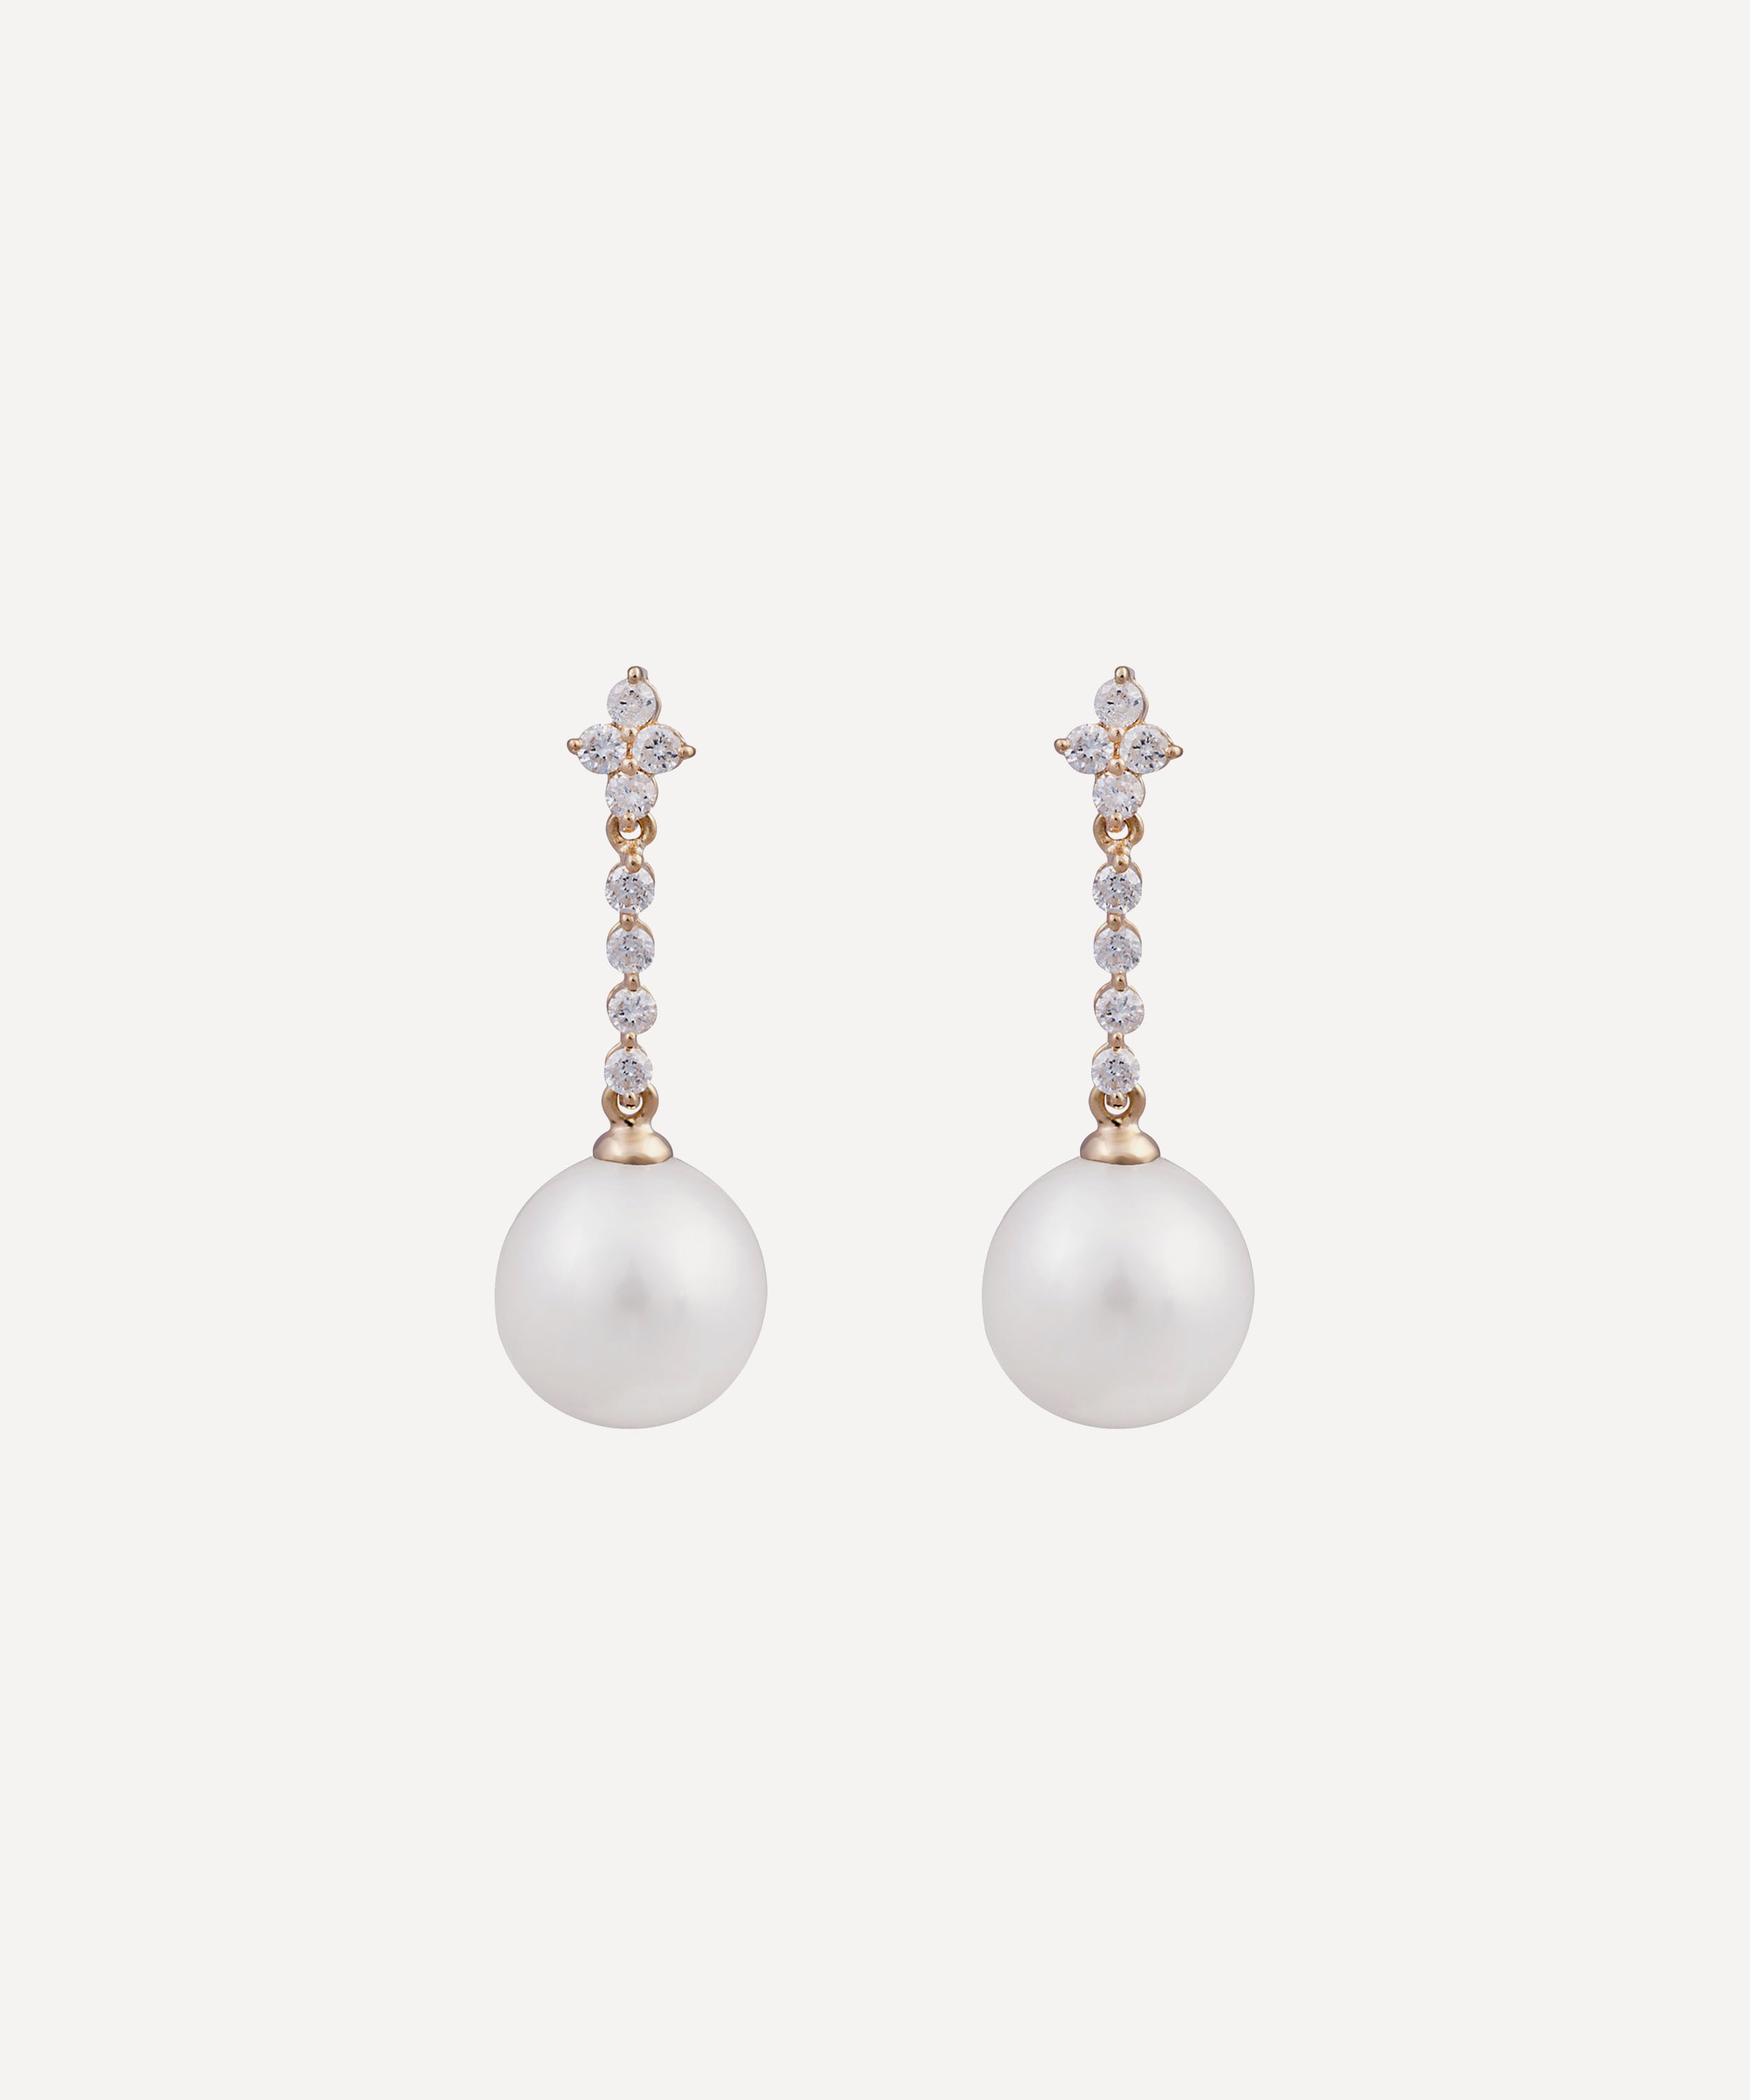 Kojis - Diamond and Pearl Drop Earrings